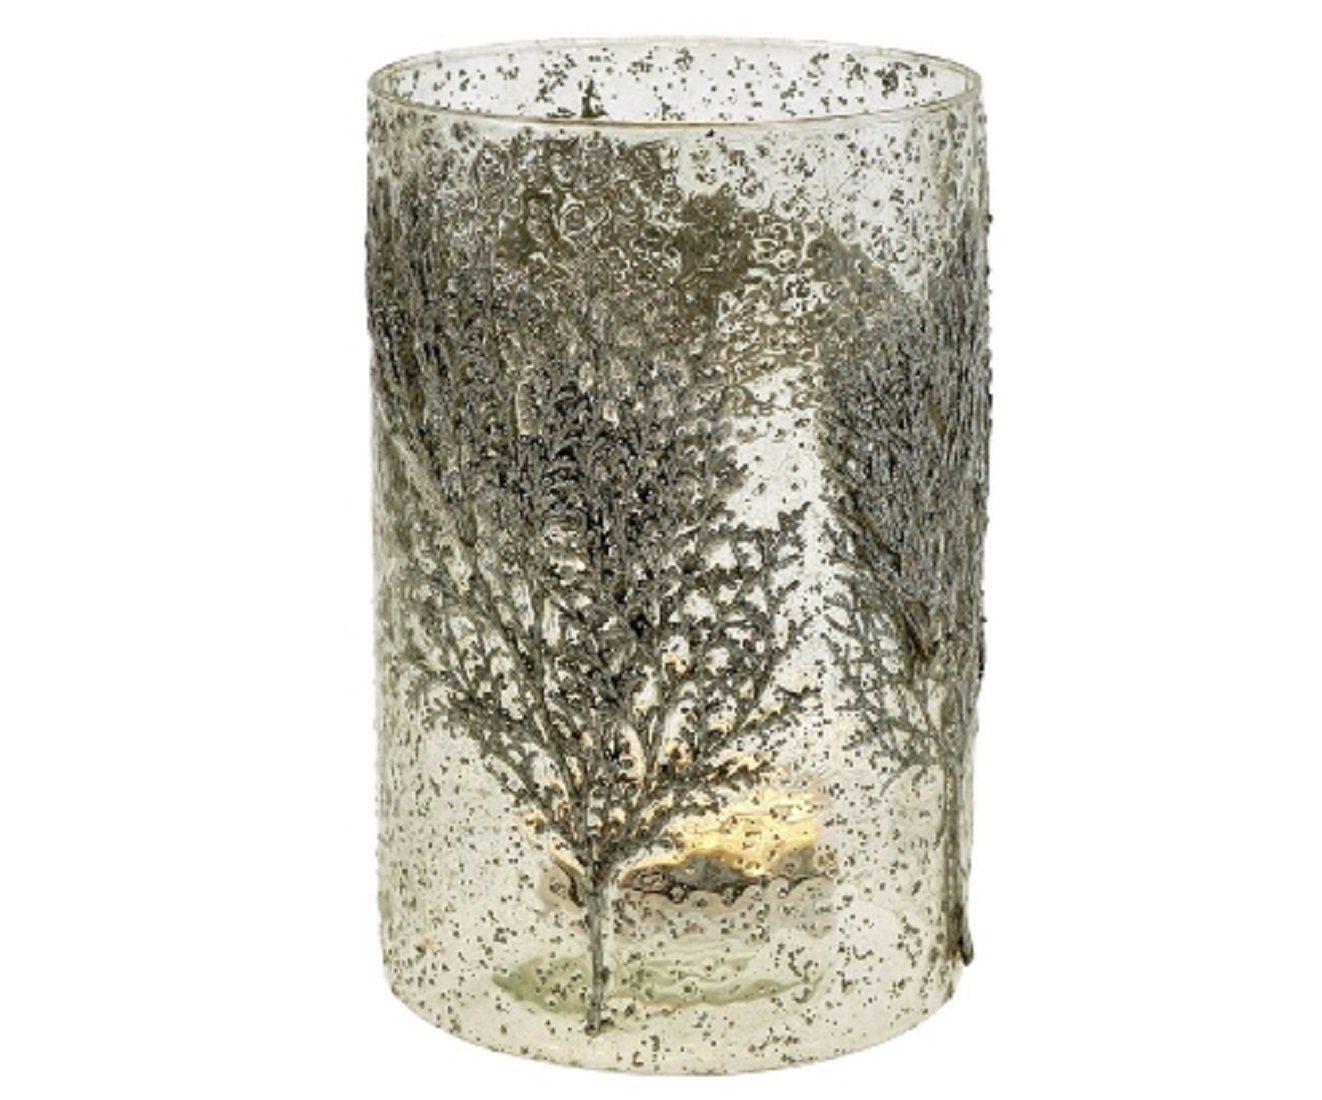 Werner Voß Teelichthalter »Windlicht Teelicht Halter Glas H=20cm Blatt  Zweige silber weiß Kerze Deko grau« (1 x Windlicht)